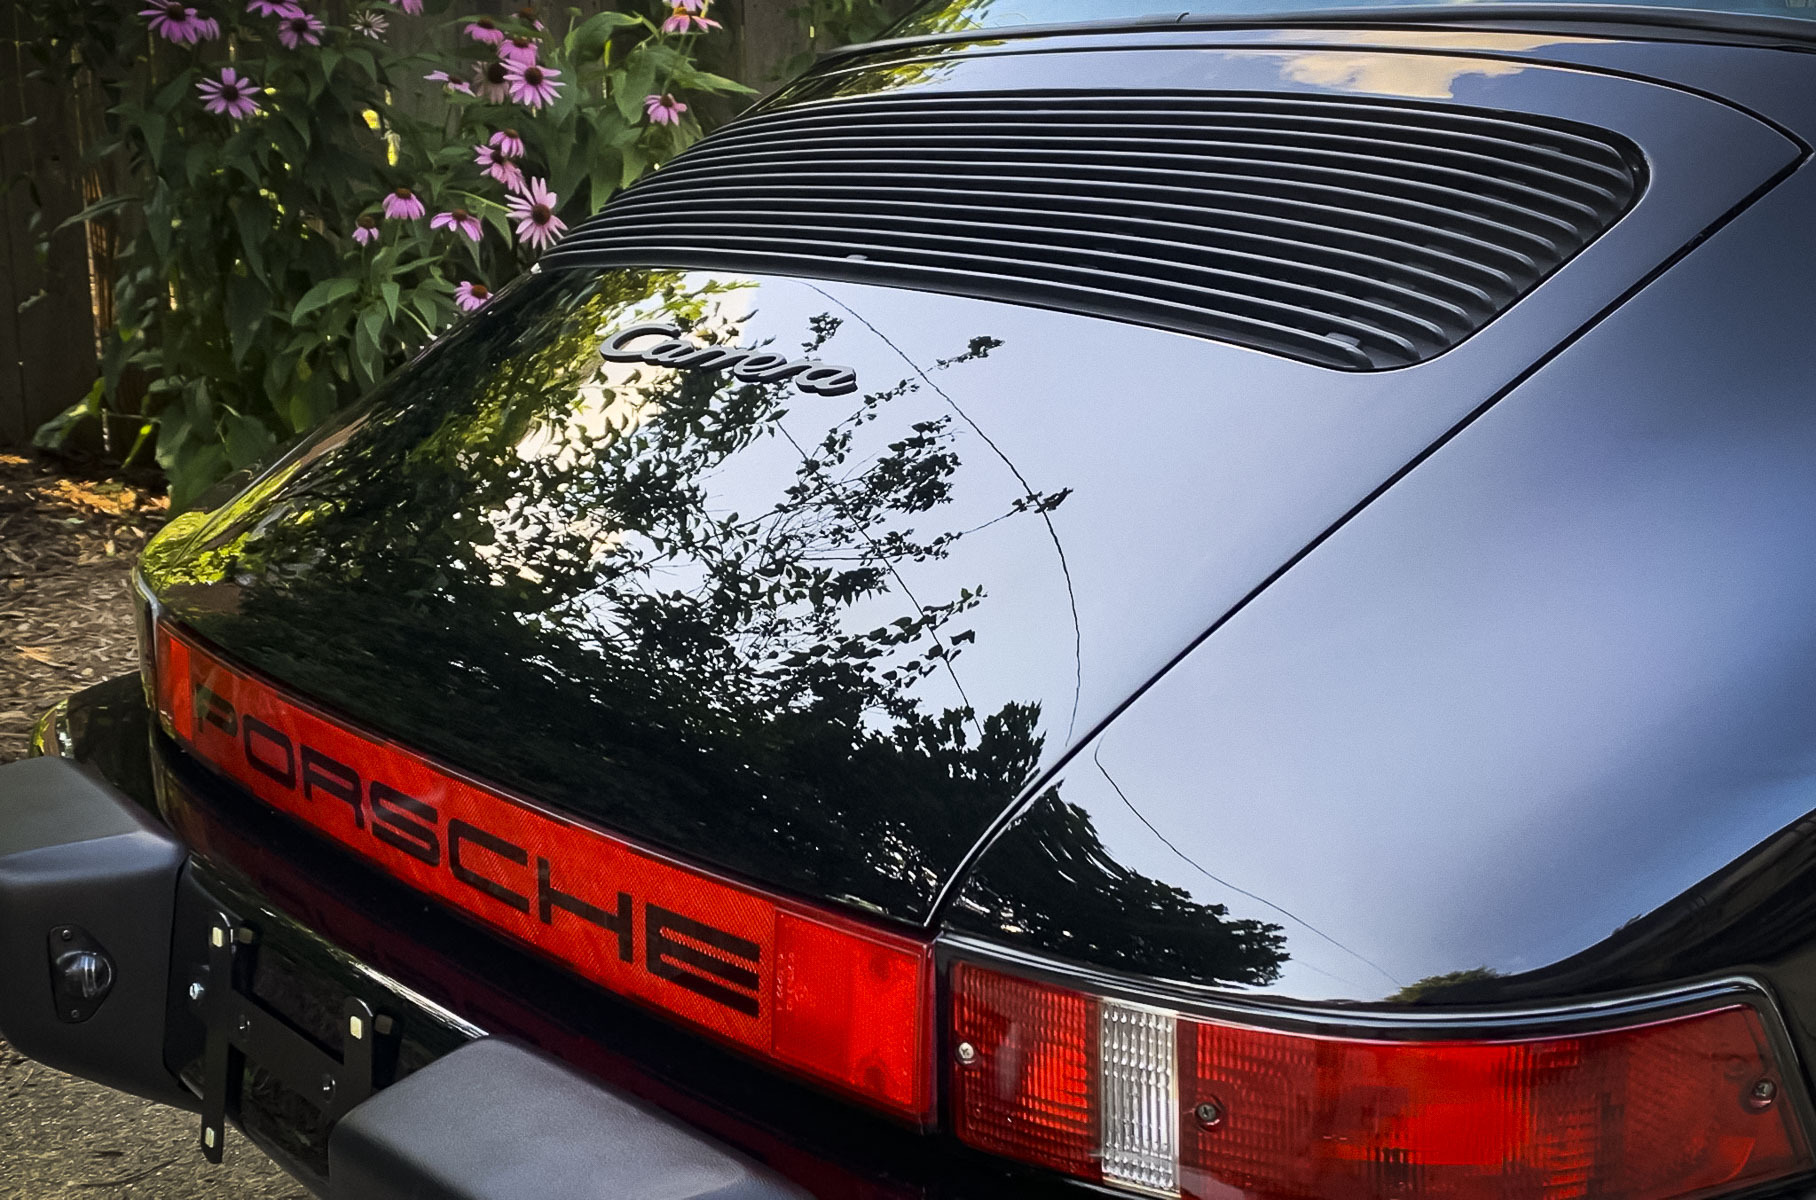 35-летний Porsche 911 Carrera, принадлежавший Тому Крузу, пустят с молотка за 3,8 миллиона рублей